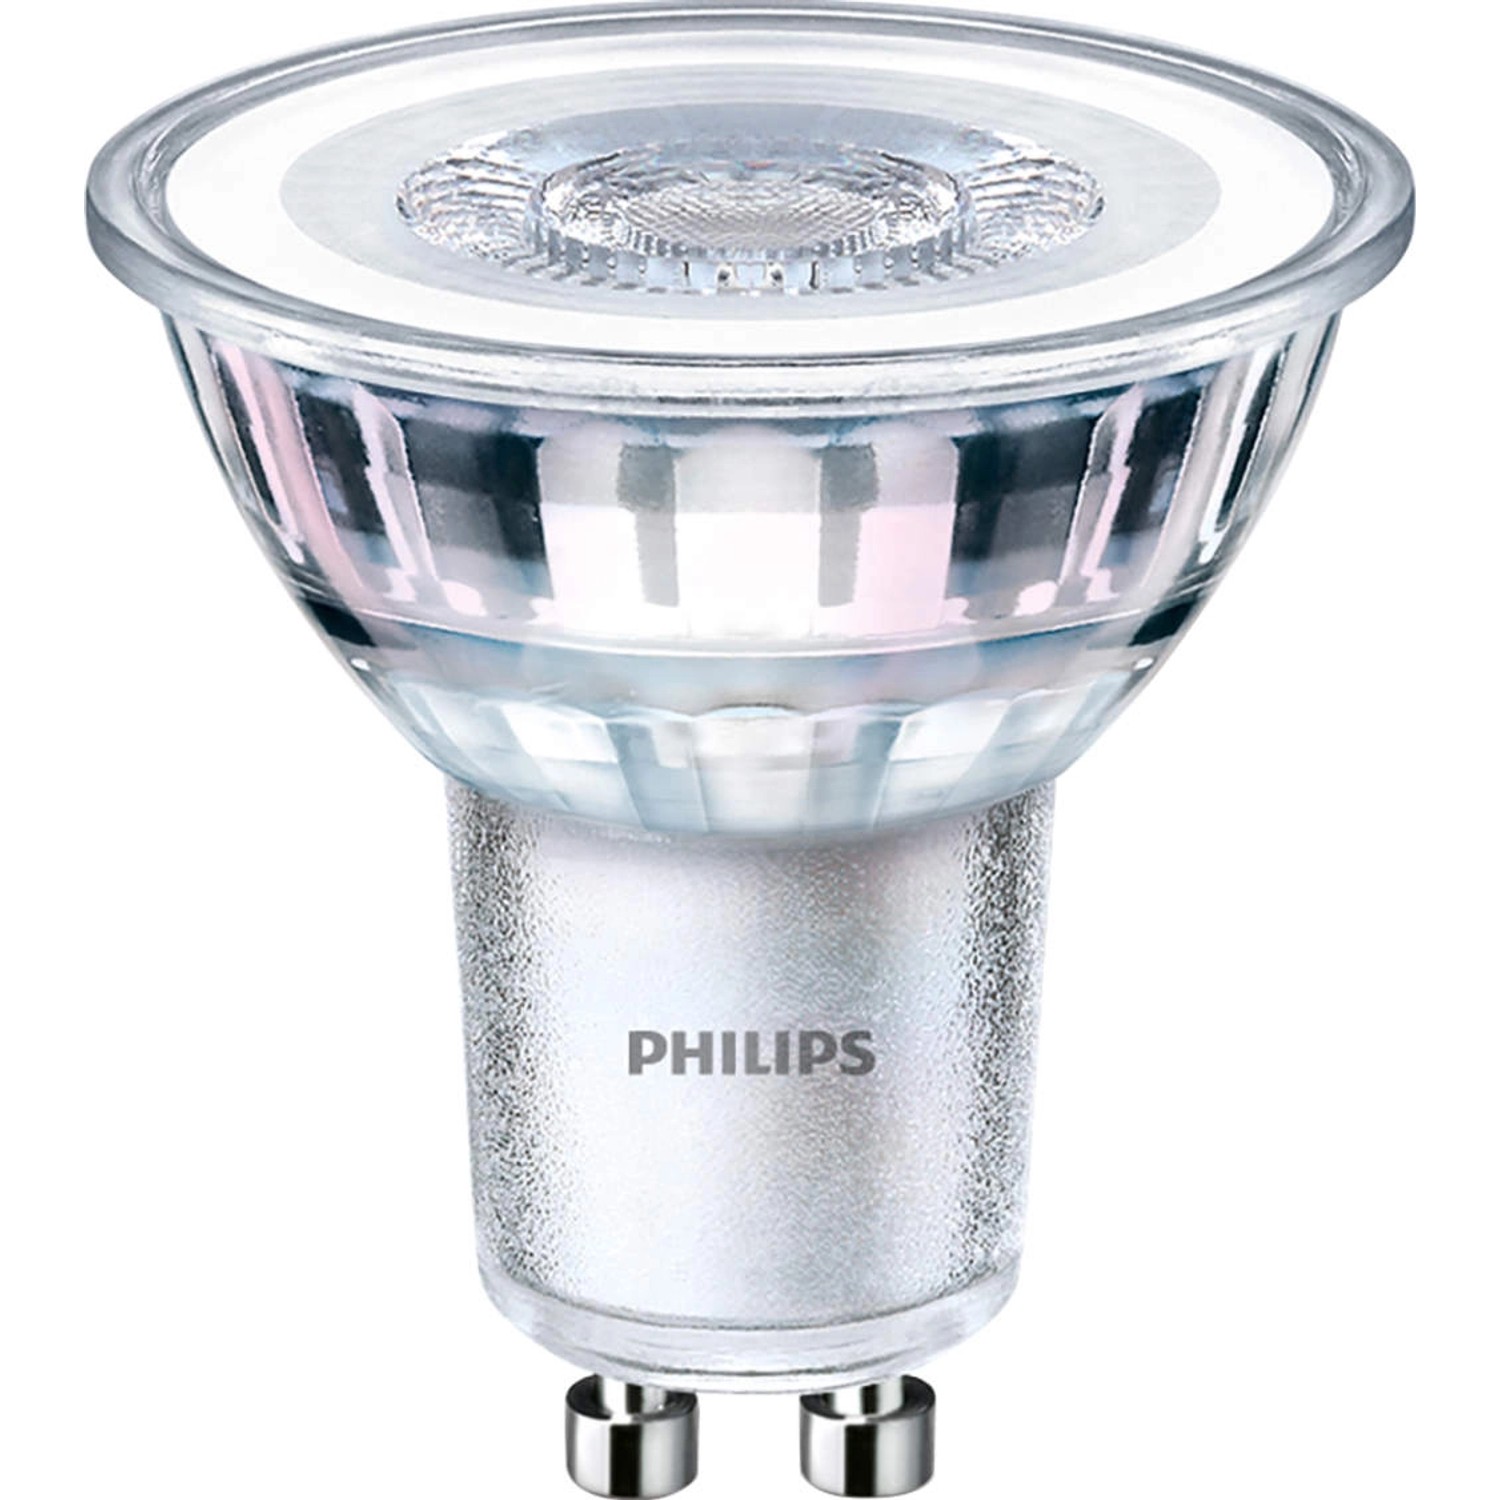 Philips LED-Leuchtmittel GU10 3,5 W Warmweiß 255 lm EEK: F 5,4 x 5 cm (H x Ø)